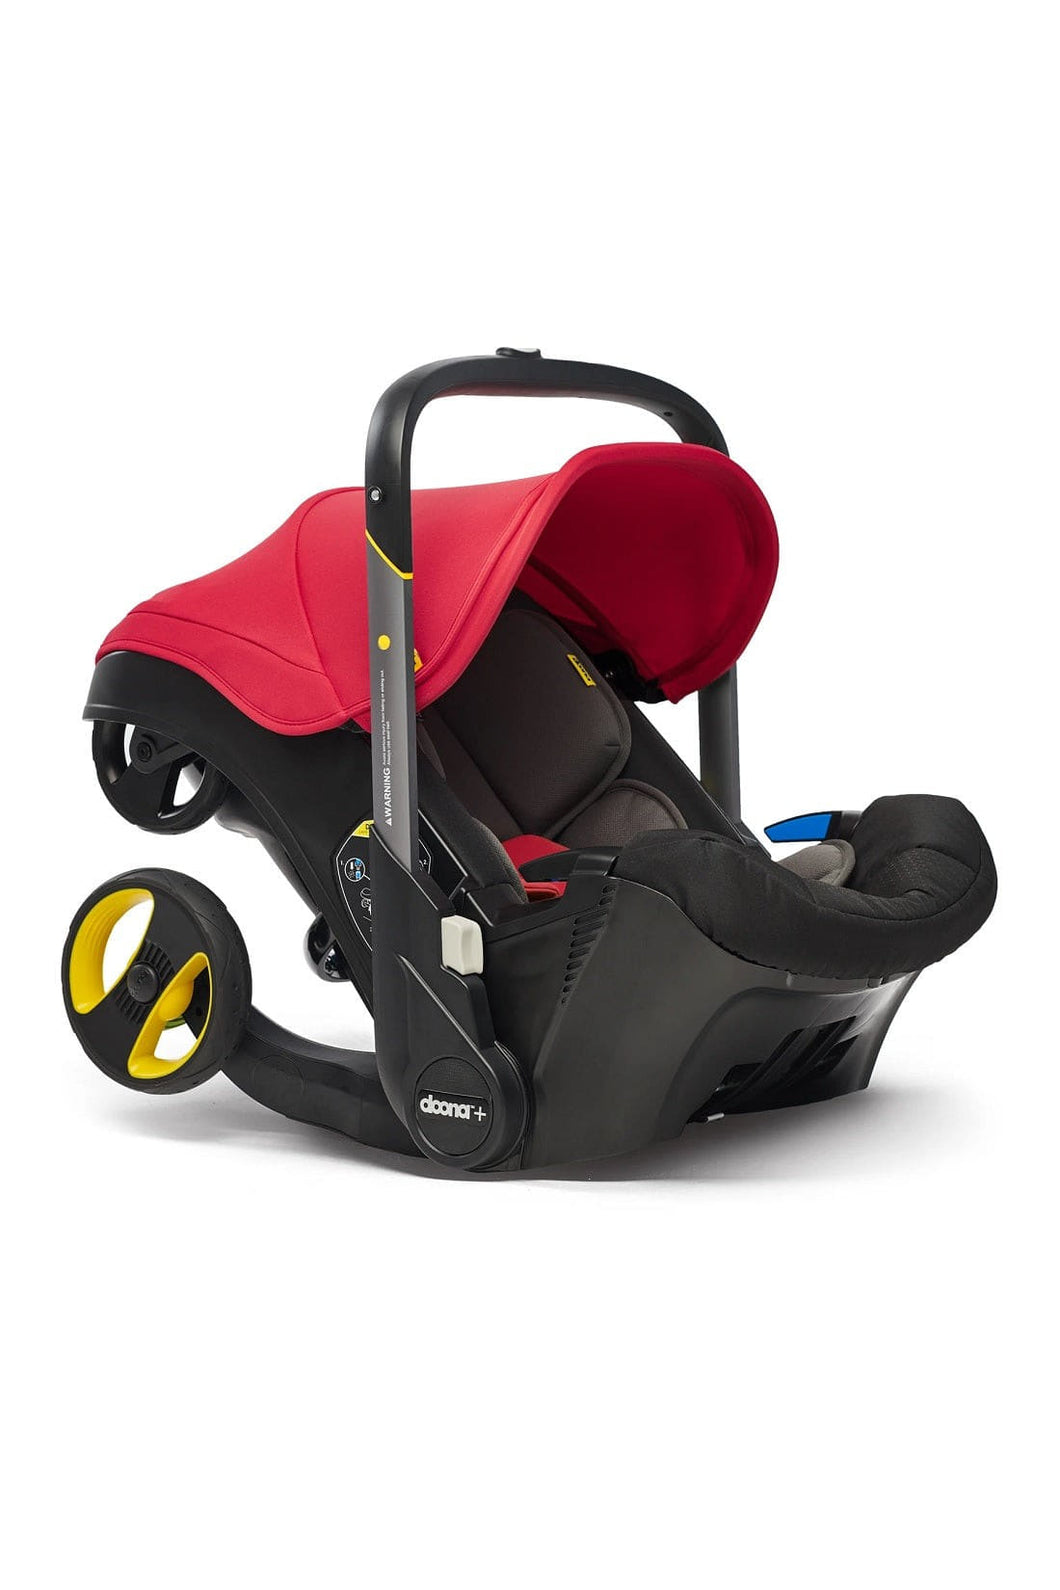 Doona Infant Car Seat Stroller 4